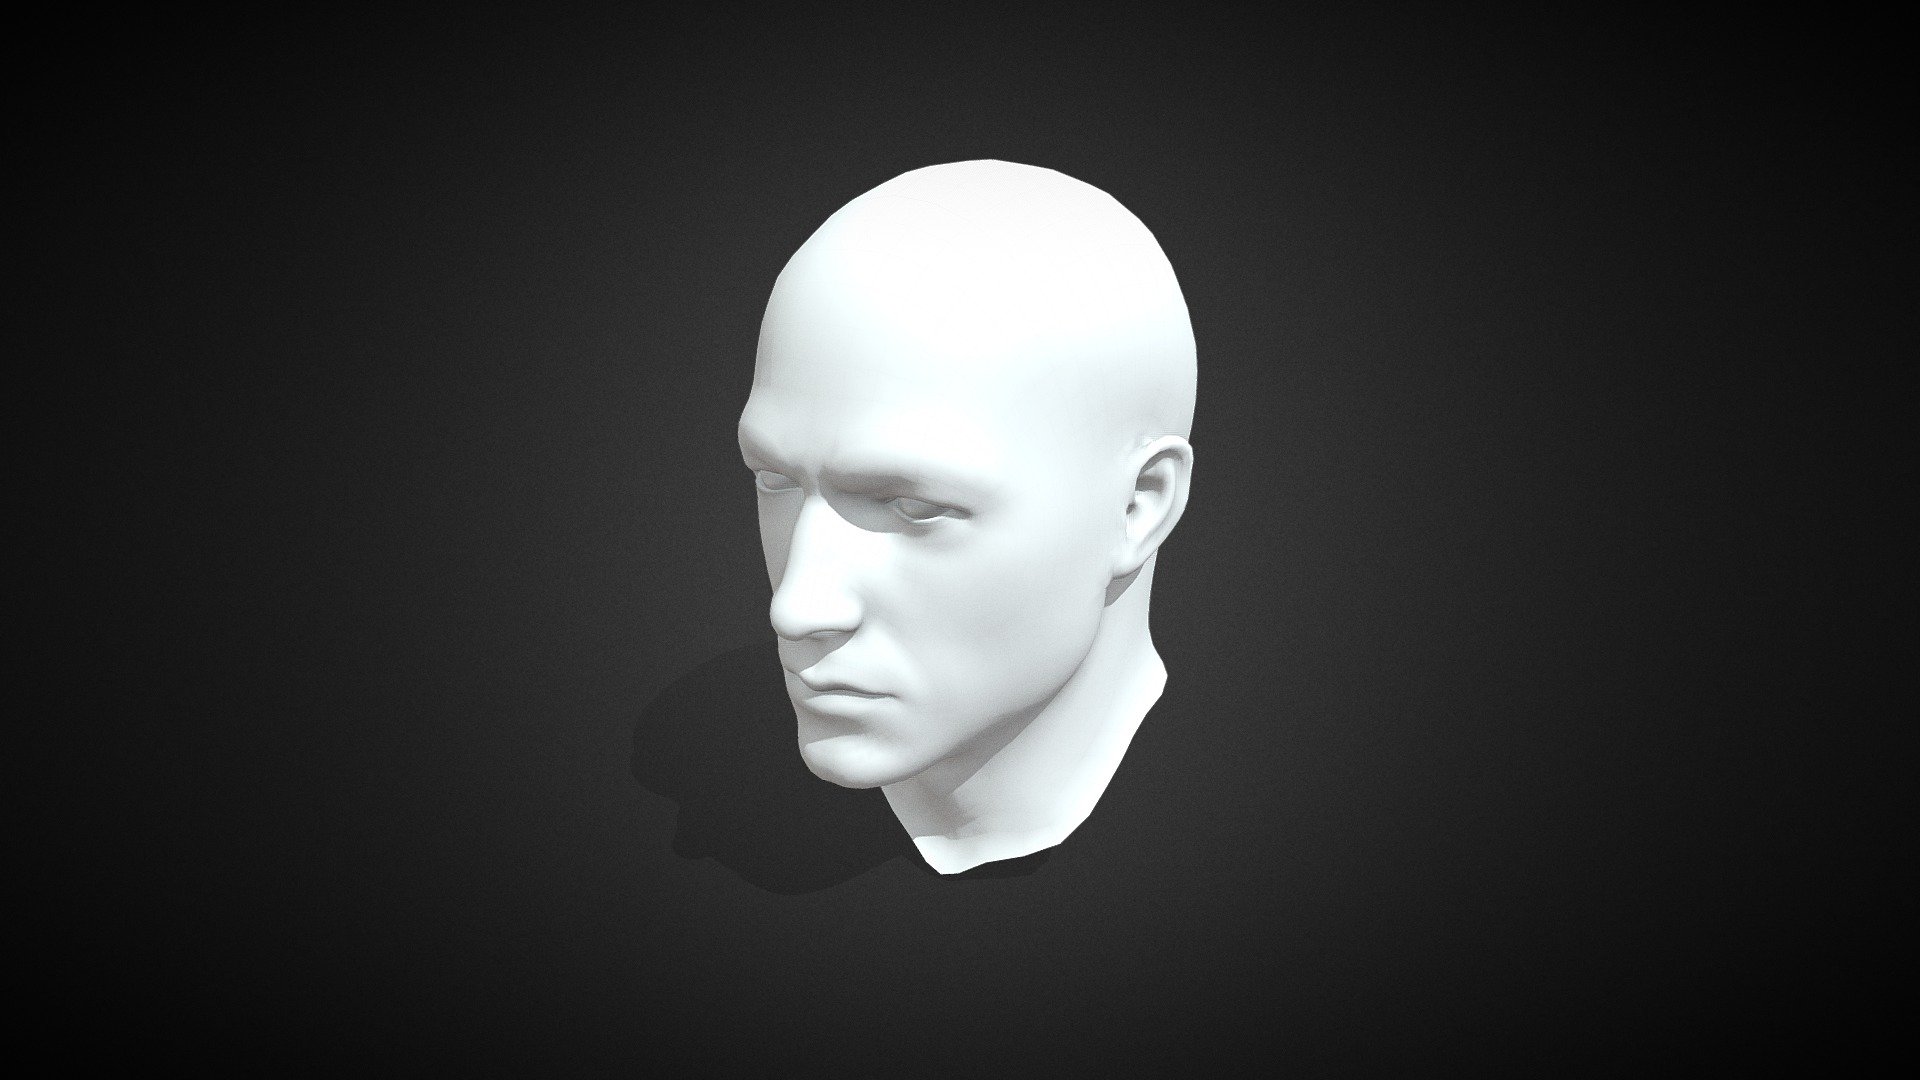 blender 3d head model download